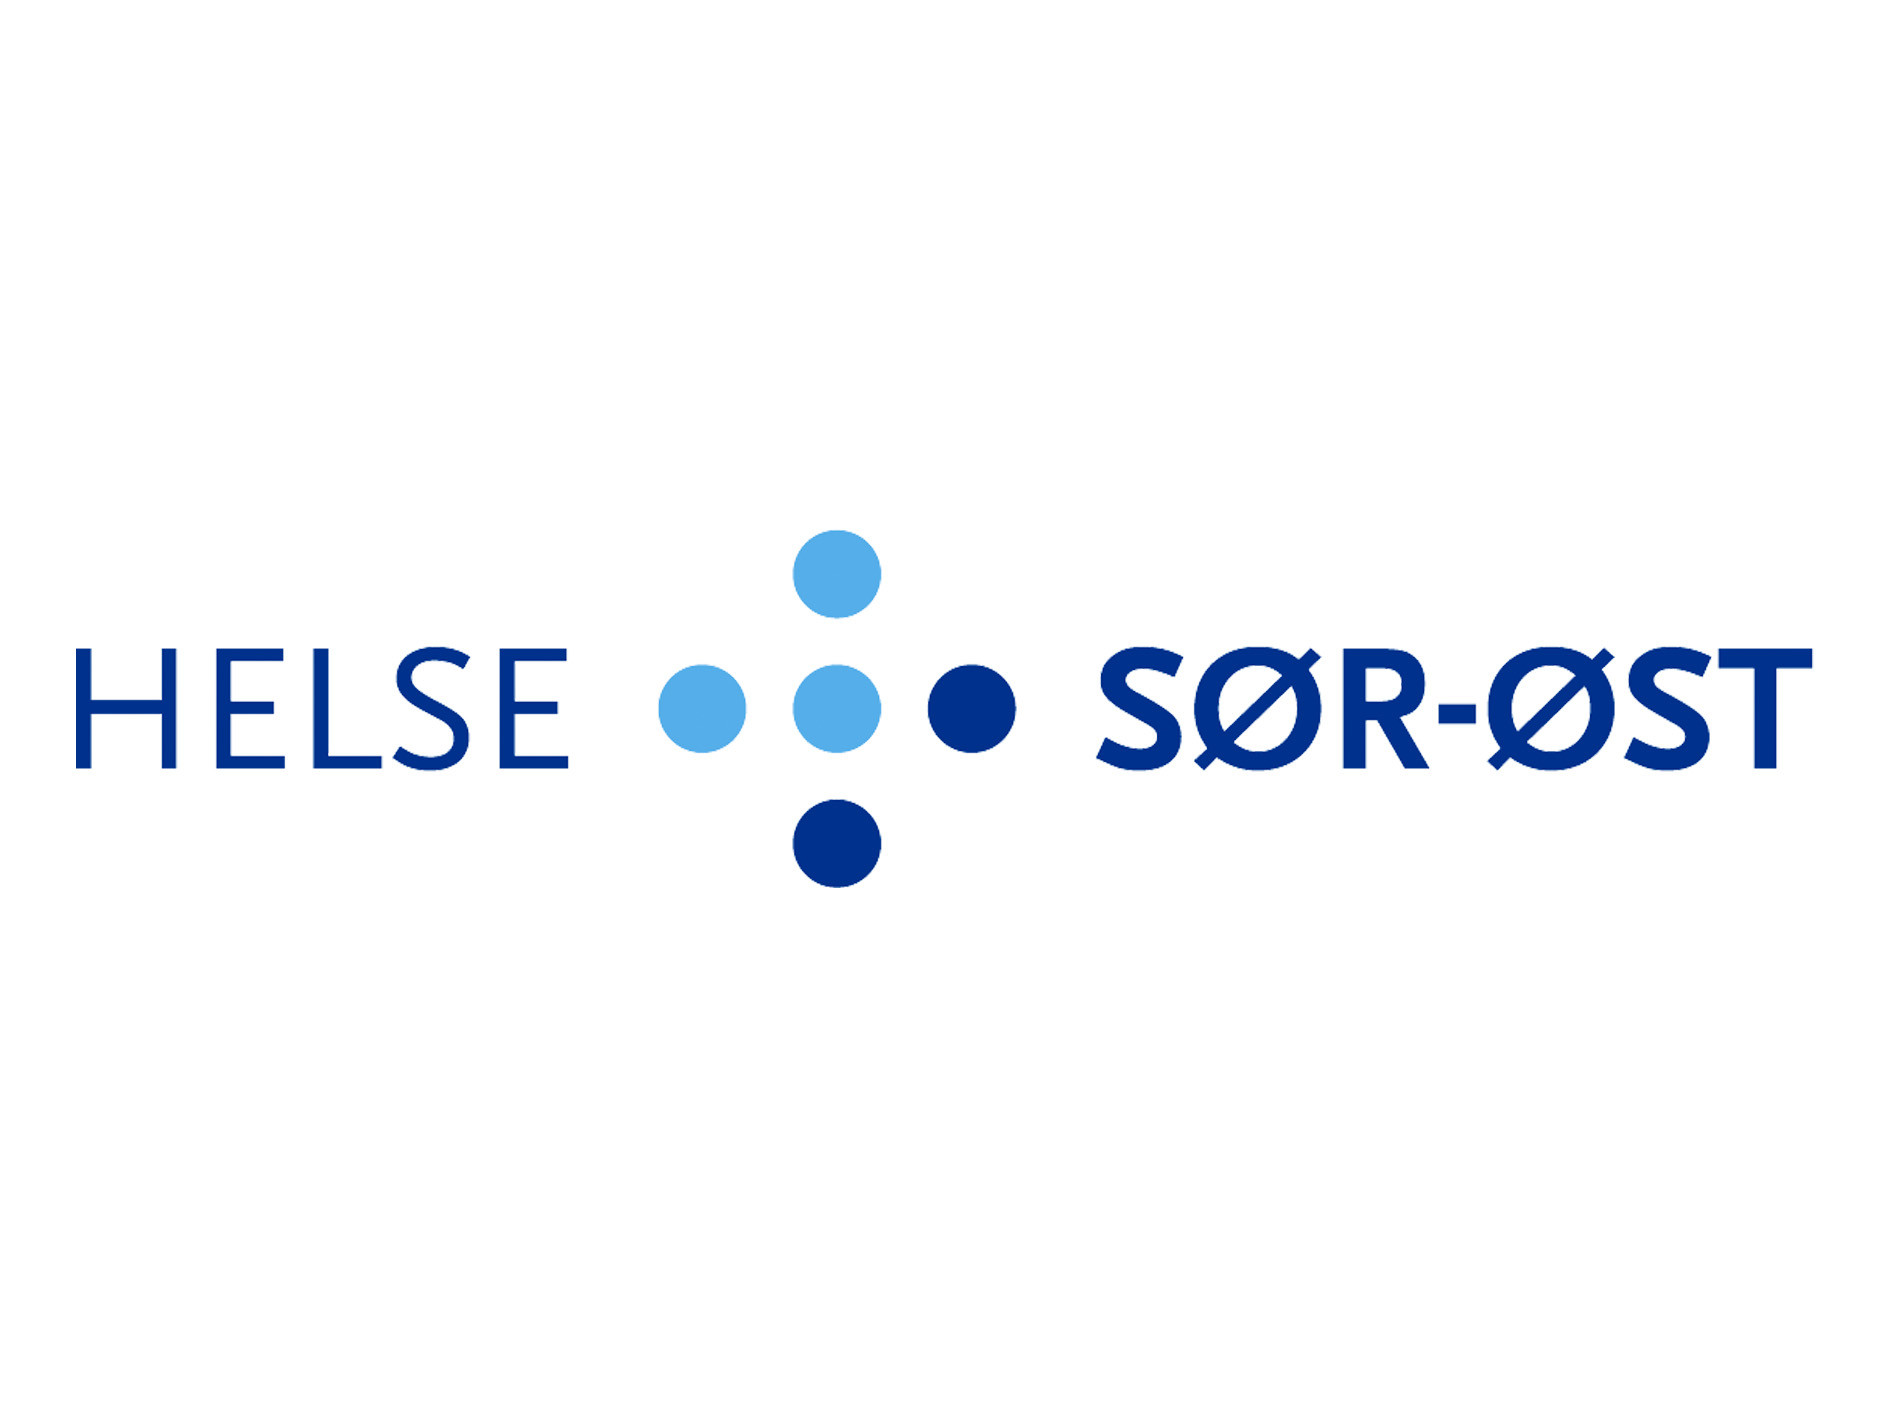 Helse s?r-?st logo